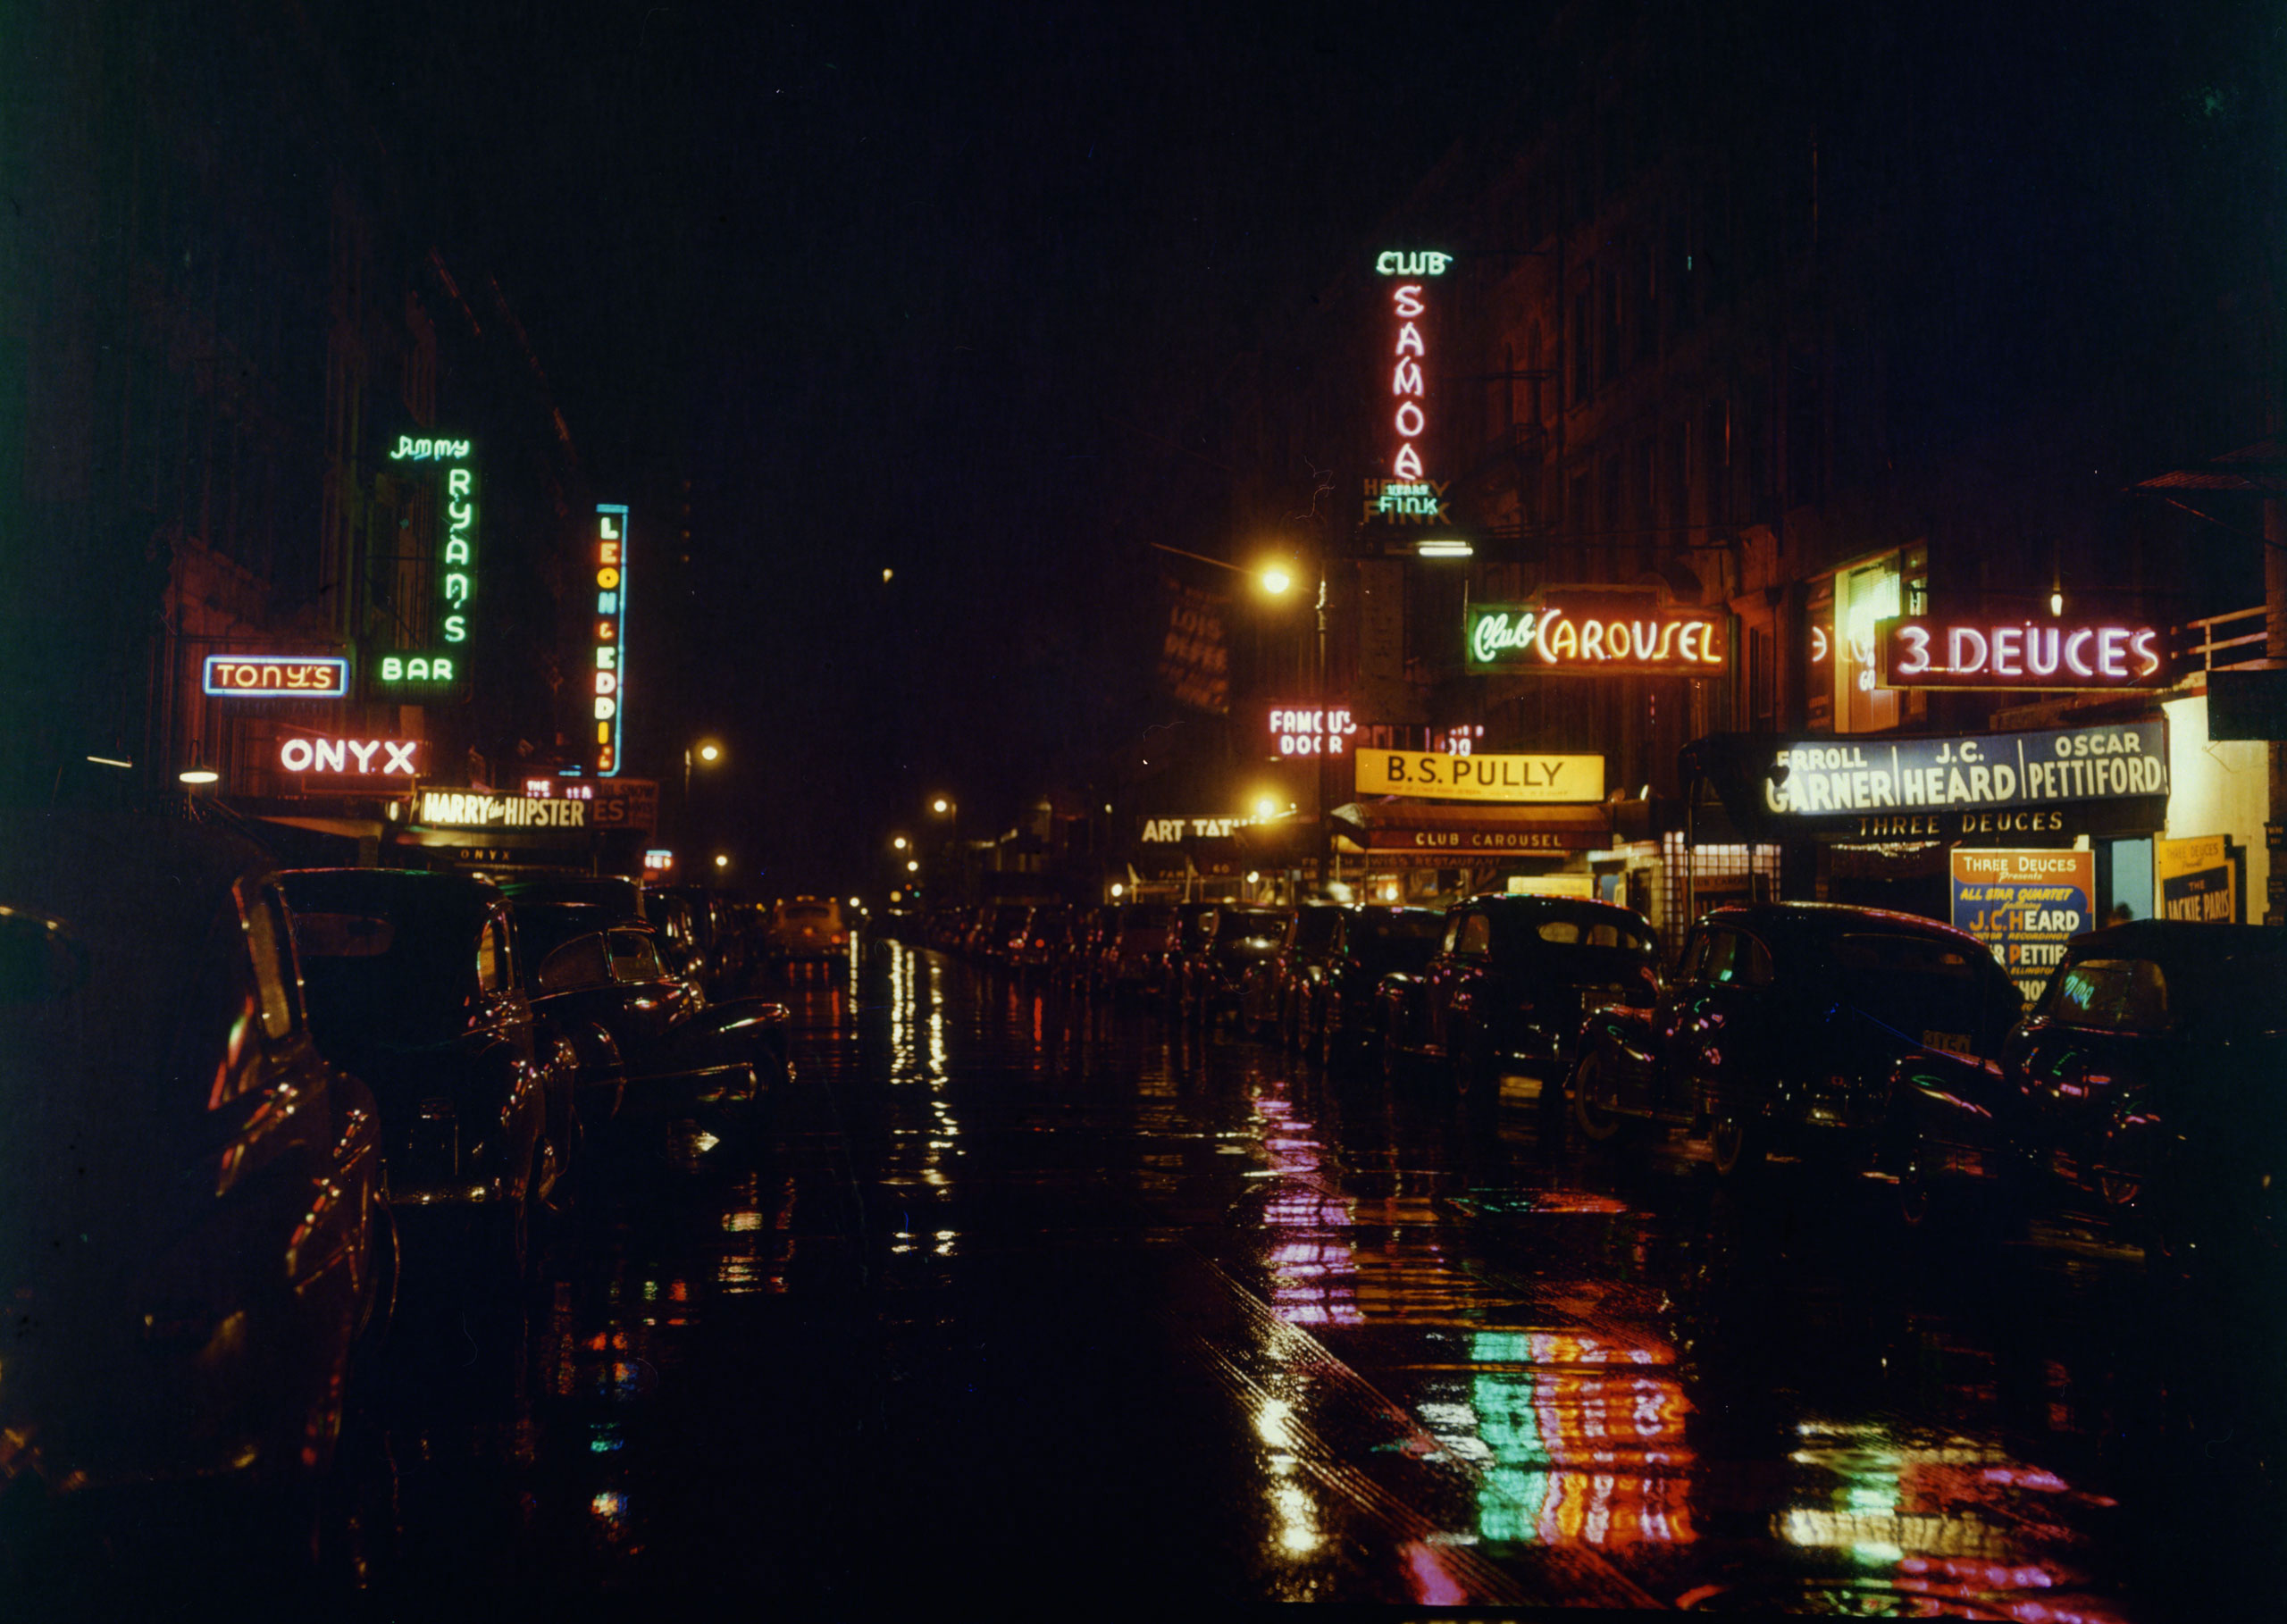 Estrada à noite, com sinais de néon refletindo na calçada molhada e carros estacionados em ambos os lados da rua